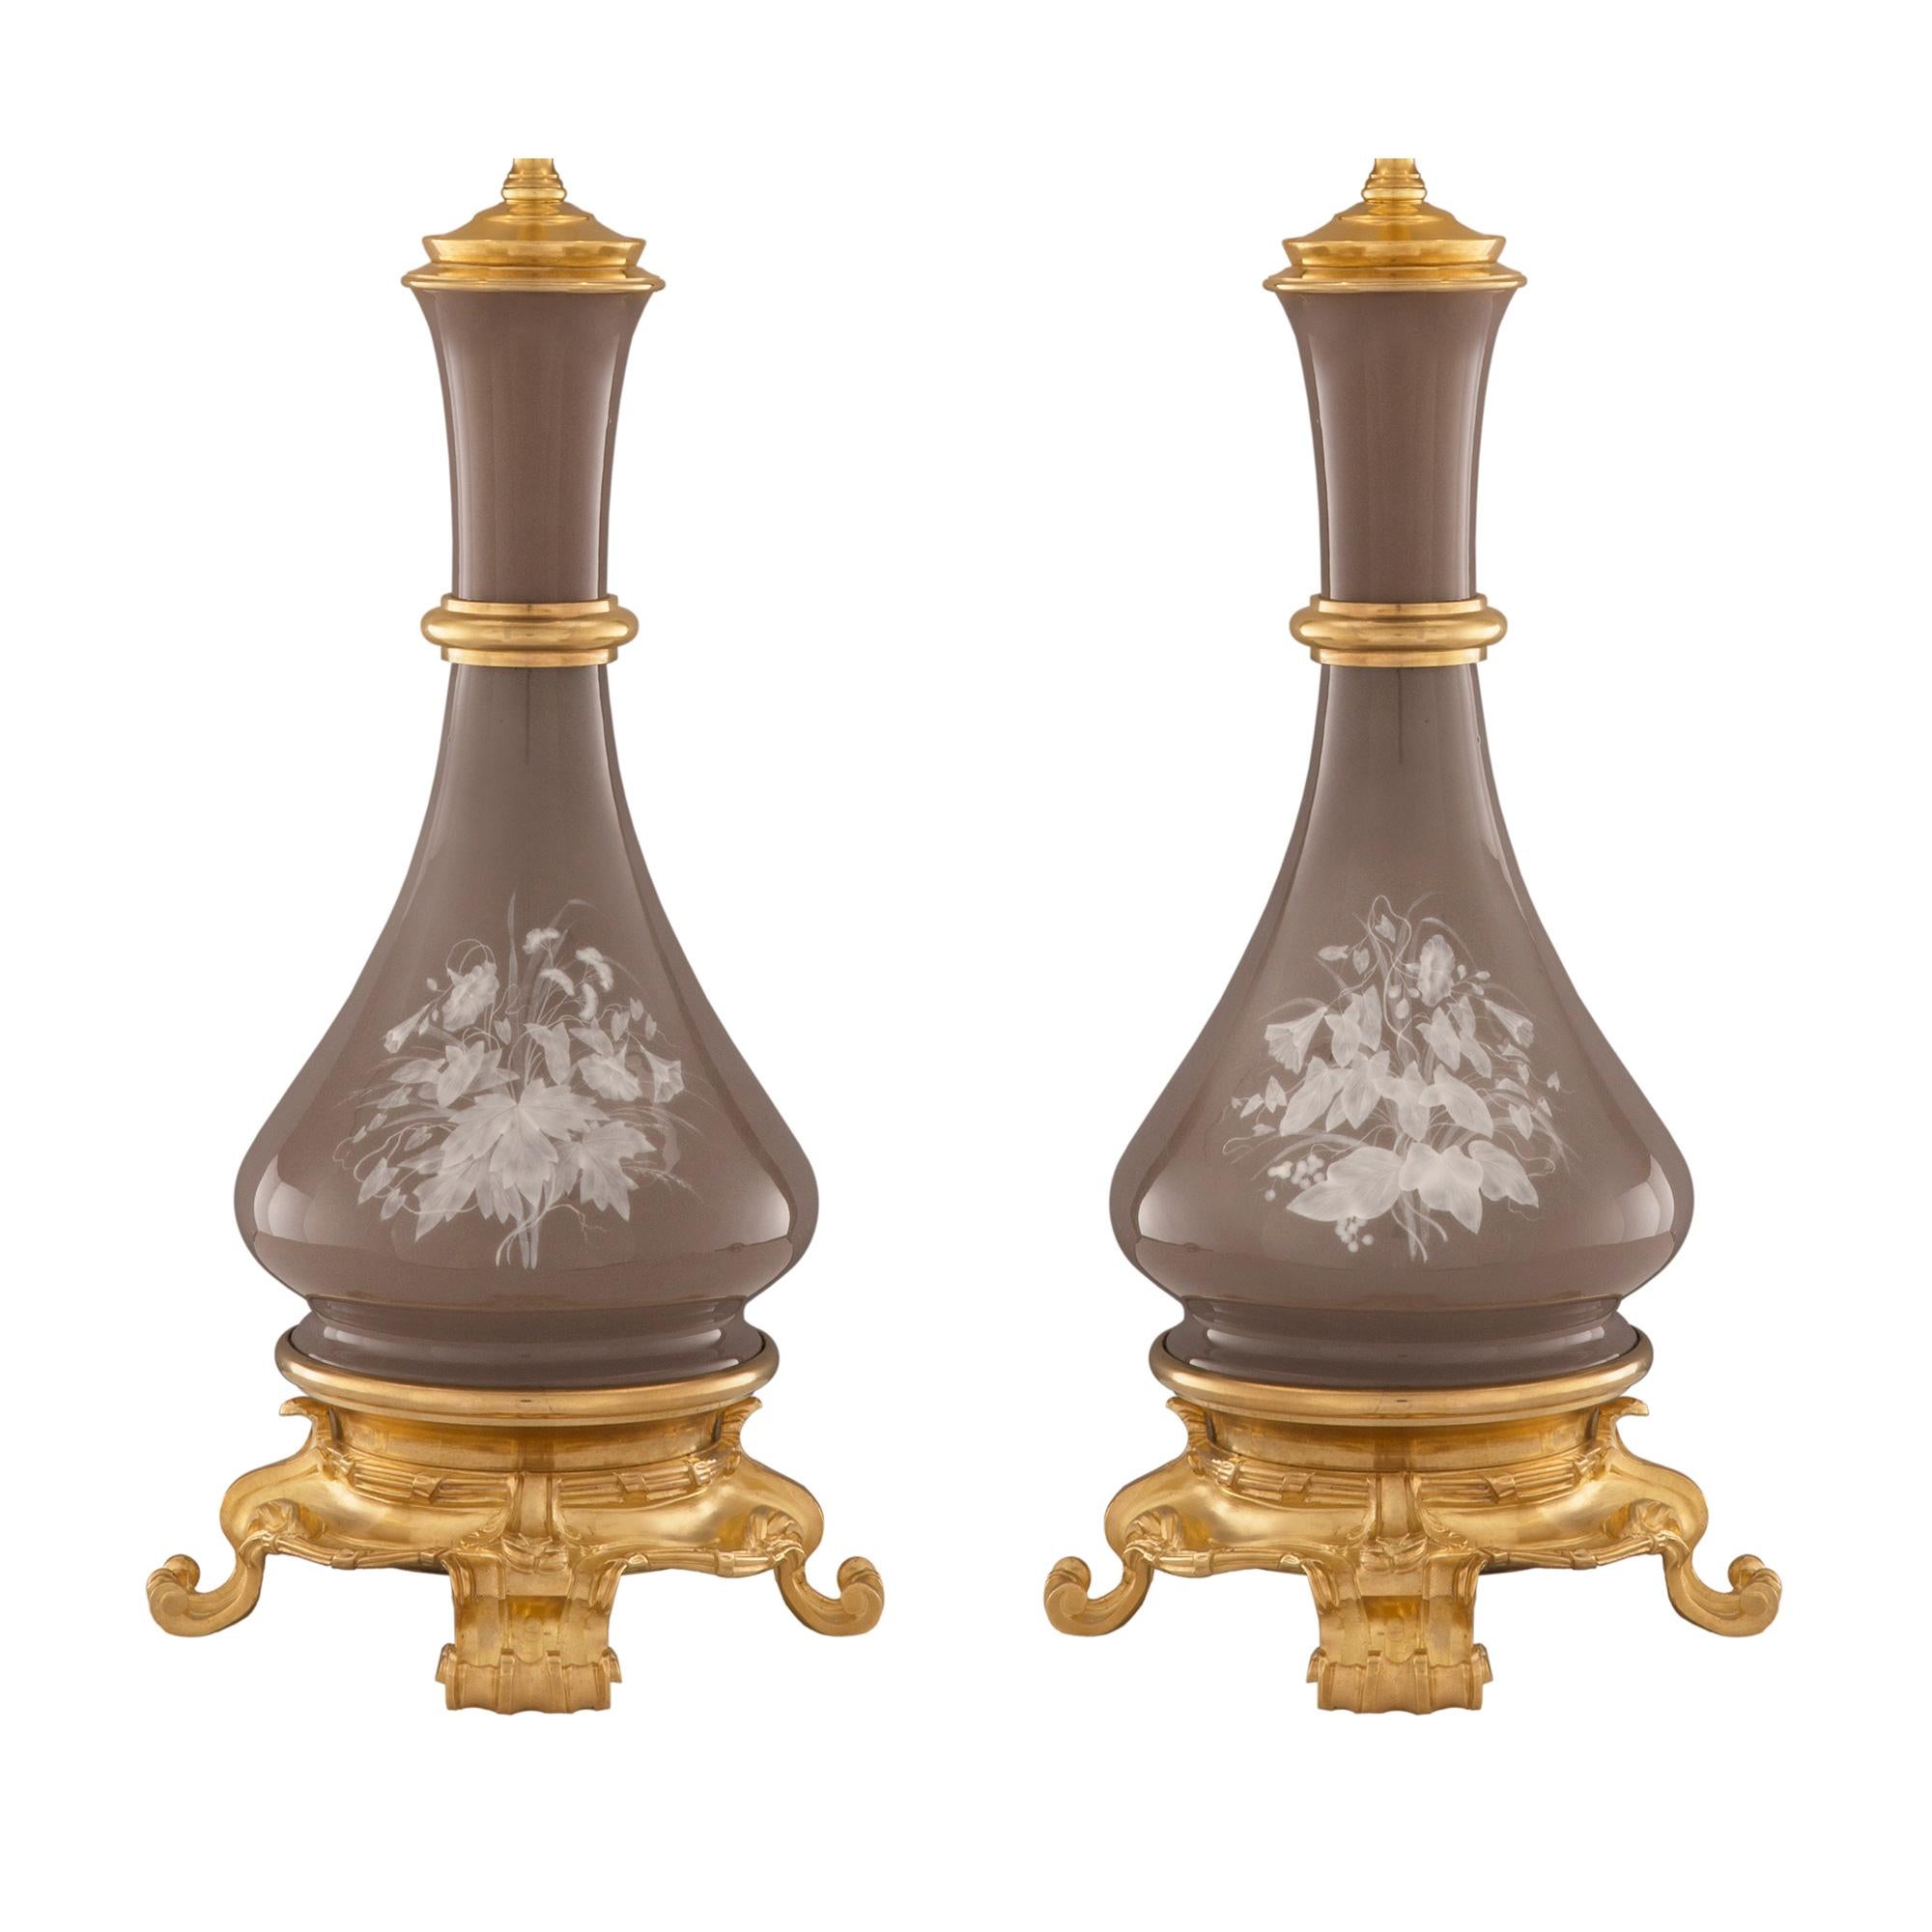 Une paire très élégante de lampes Pâte sur Pâte en porcelaine et bronze doré de style Louis XVI du 19ème siècle. Chaque lampe est surélevée par une fine base en bronze doré avec des pieds feuillus très décoratifs et un joli motif martelé. Au-dessus